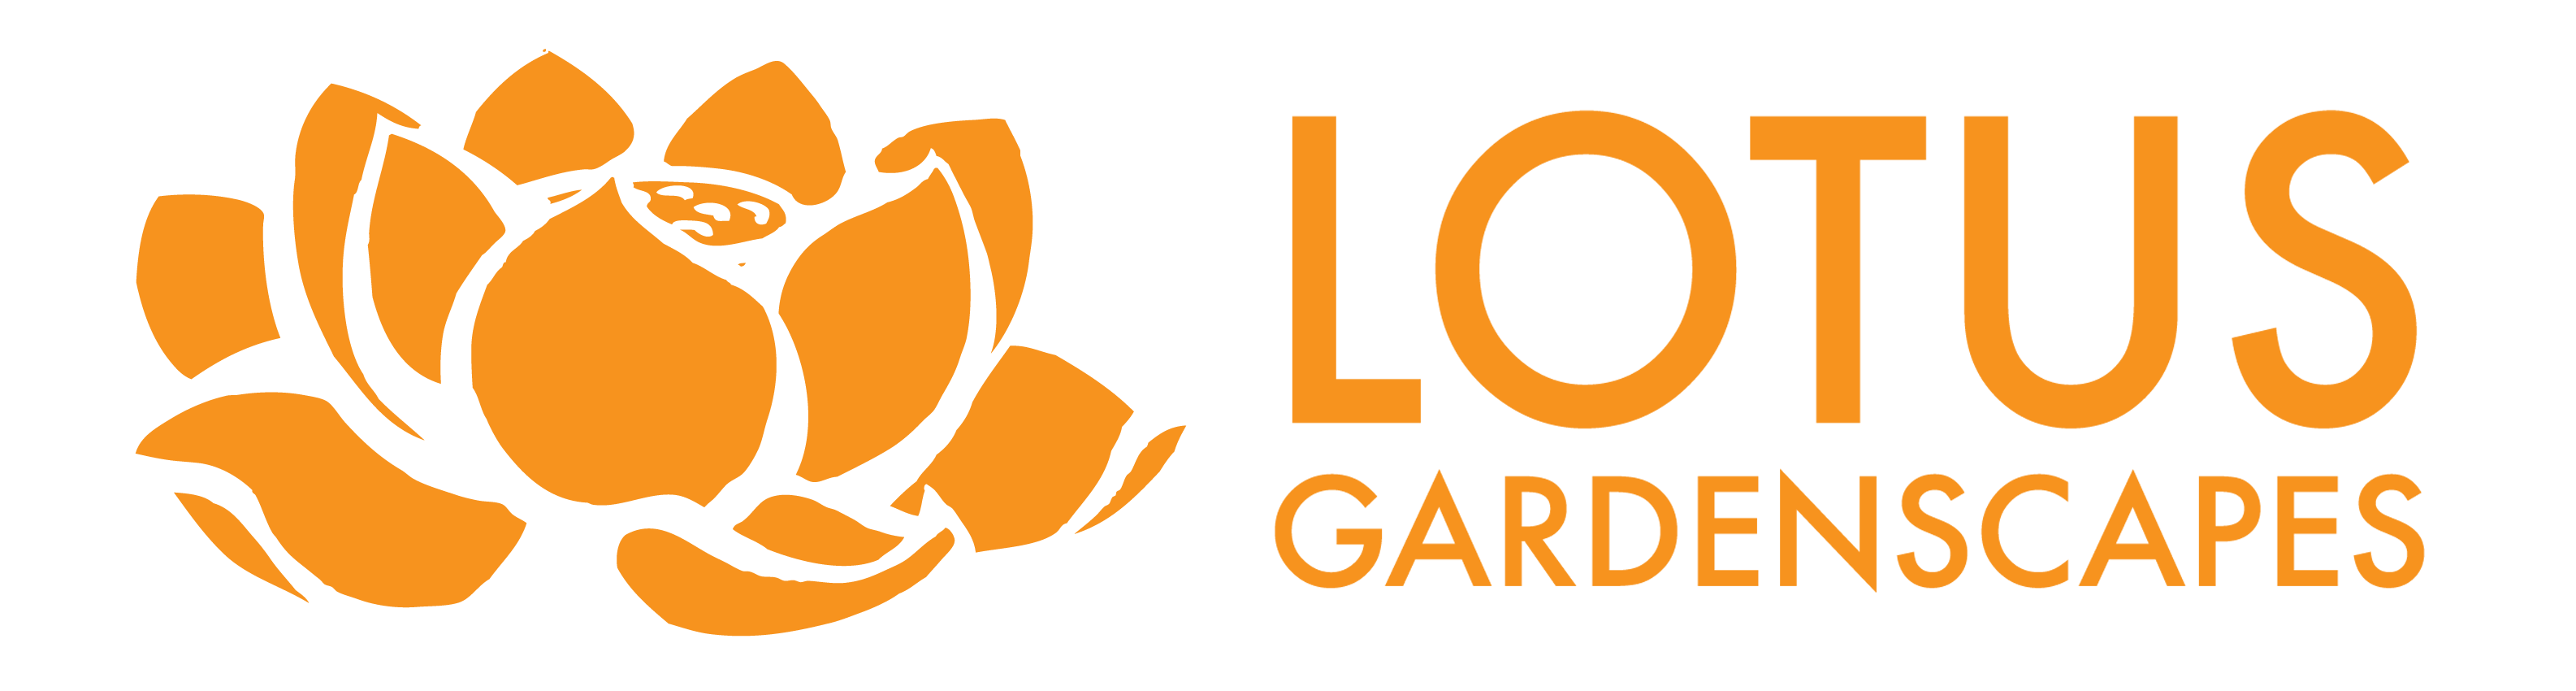 Lotus Gardenscapes logo